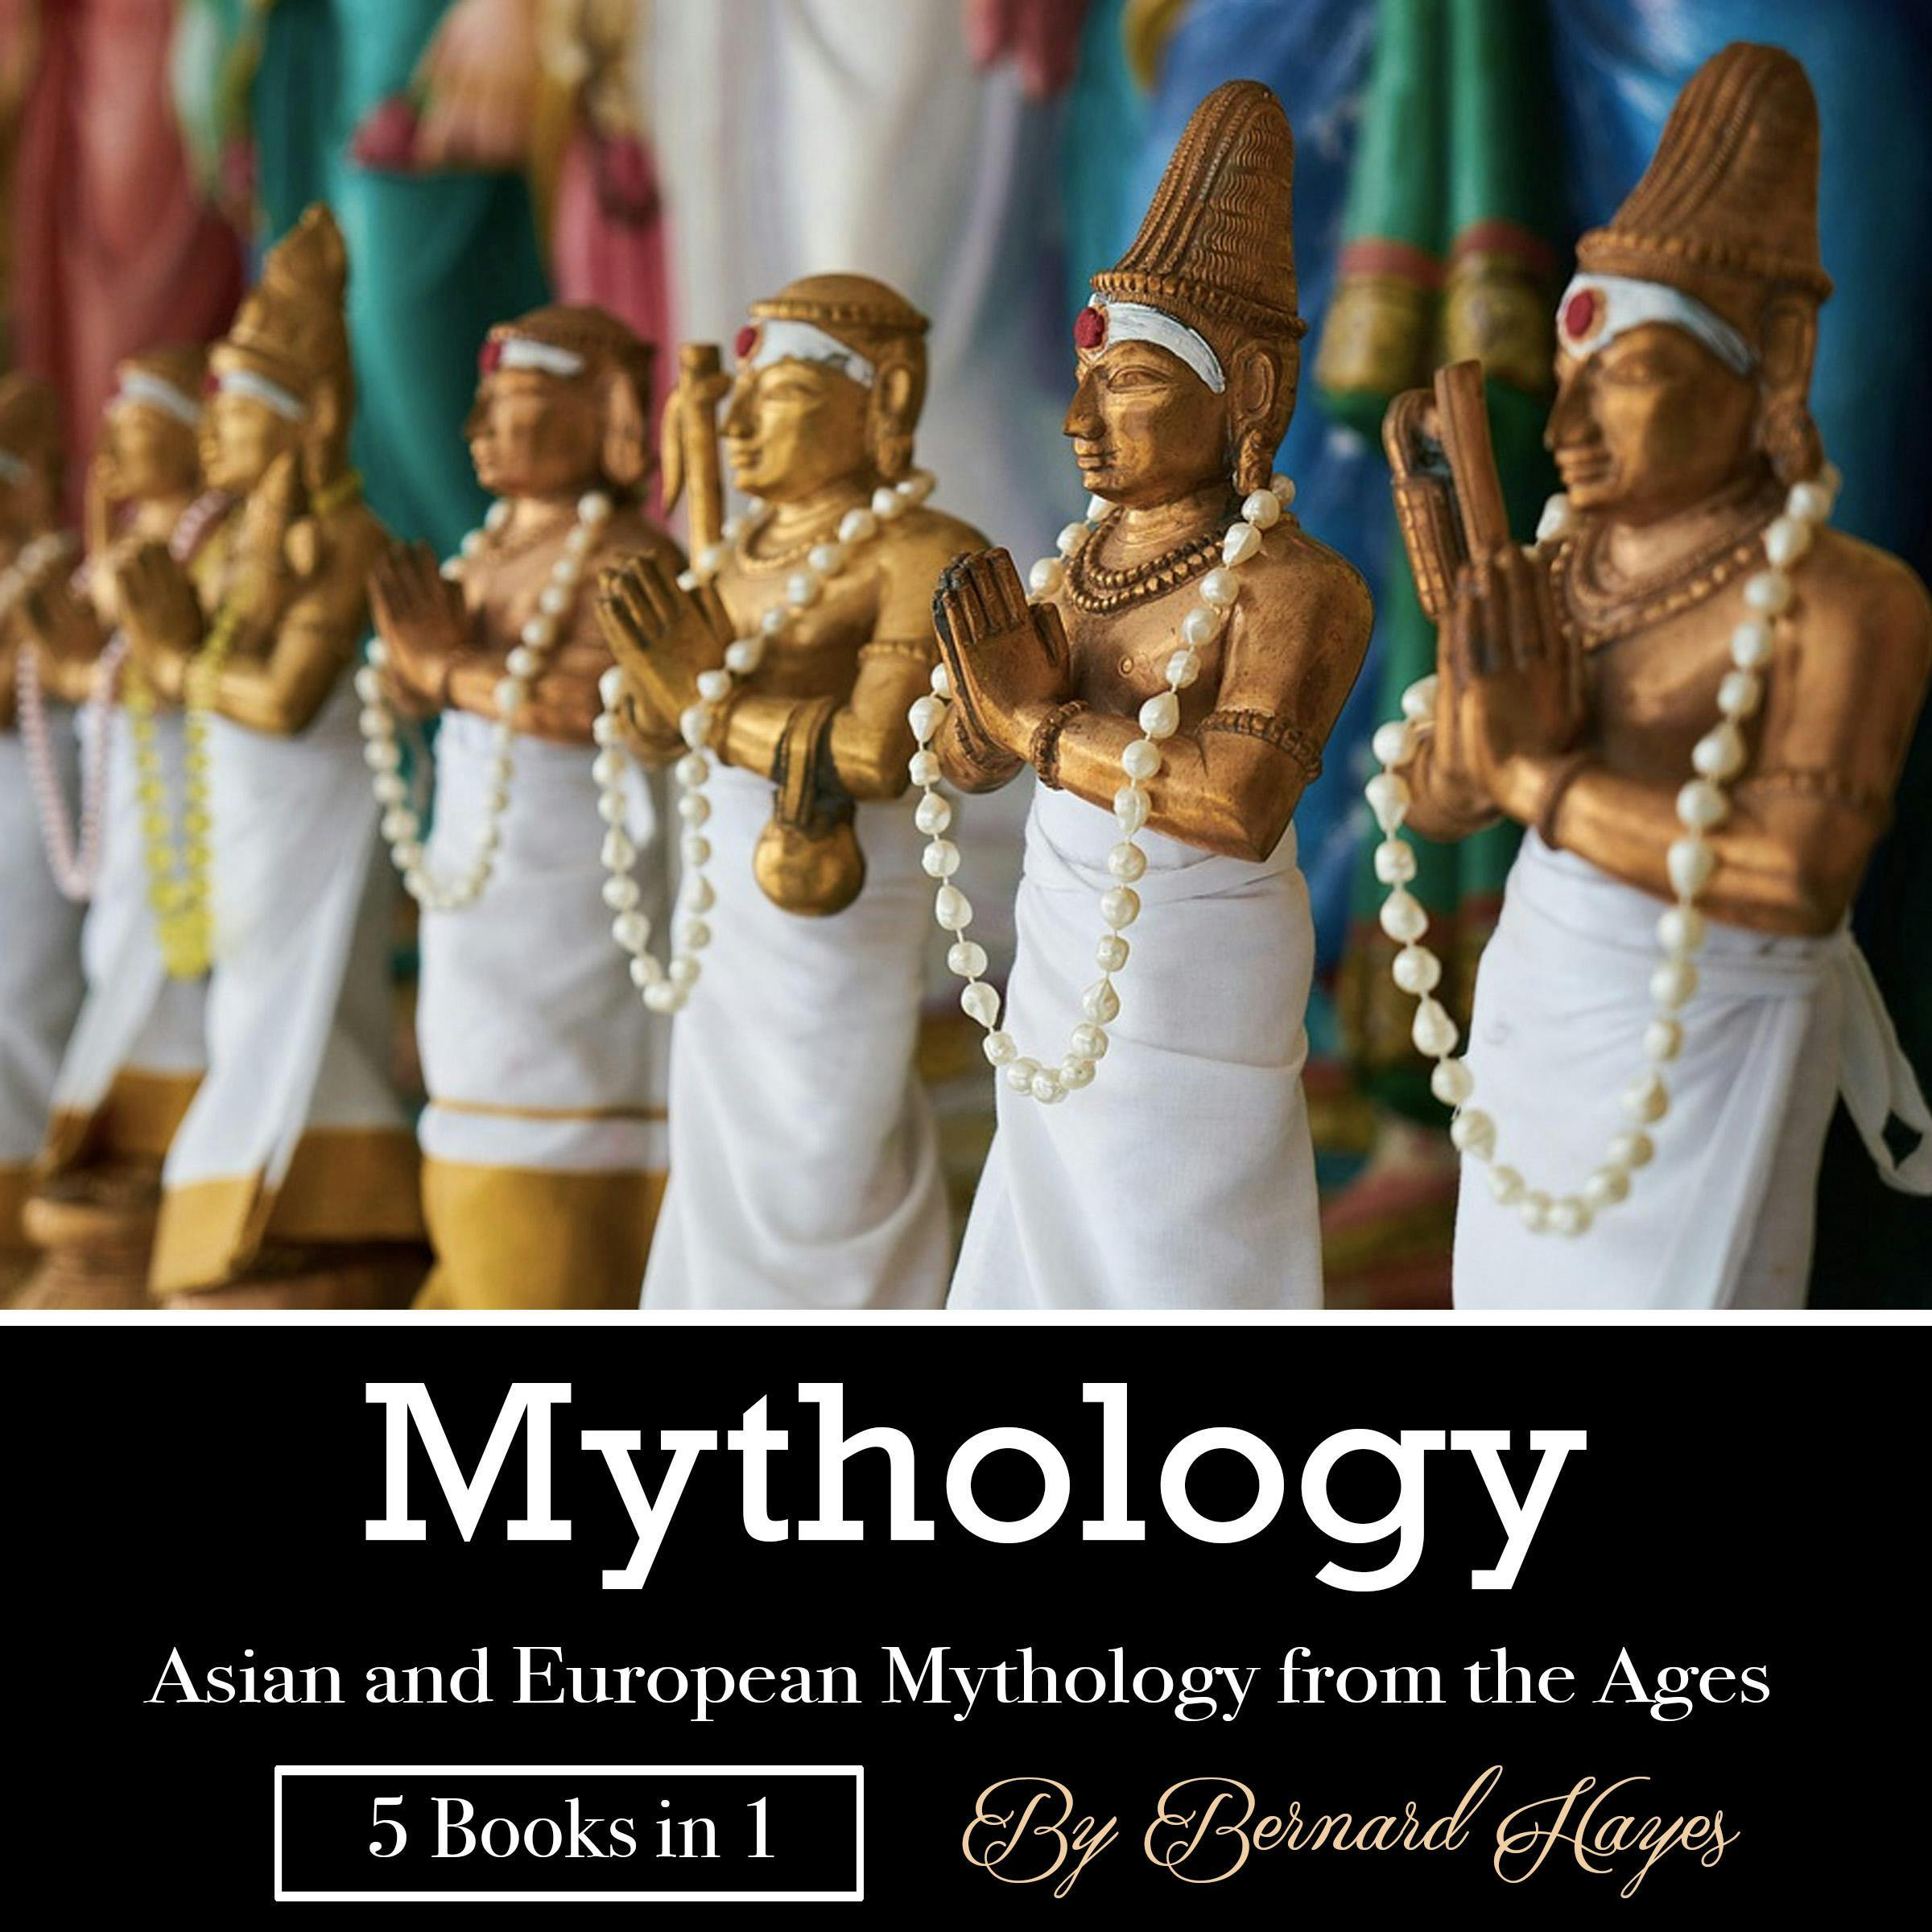 Mythology: Asian and European Mythology from the Ages - Bernard Hayes